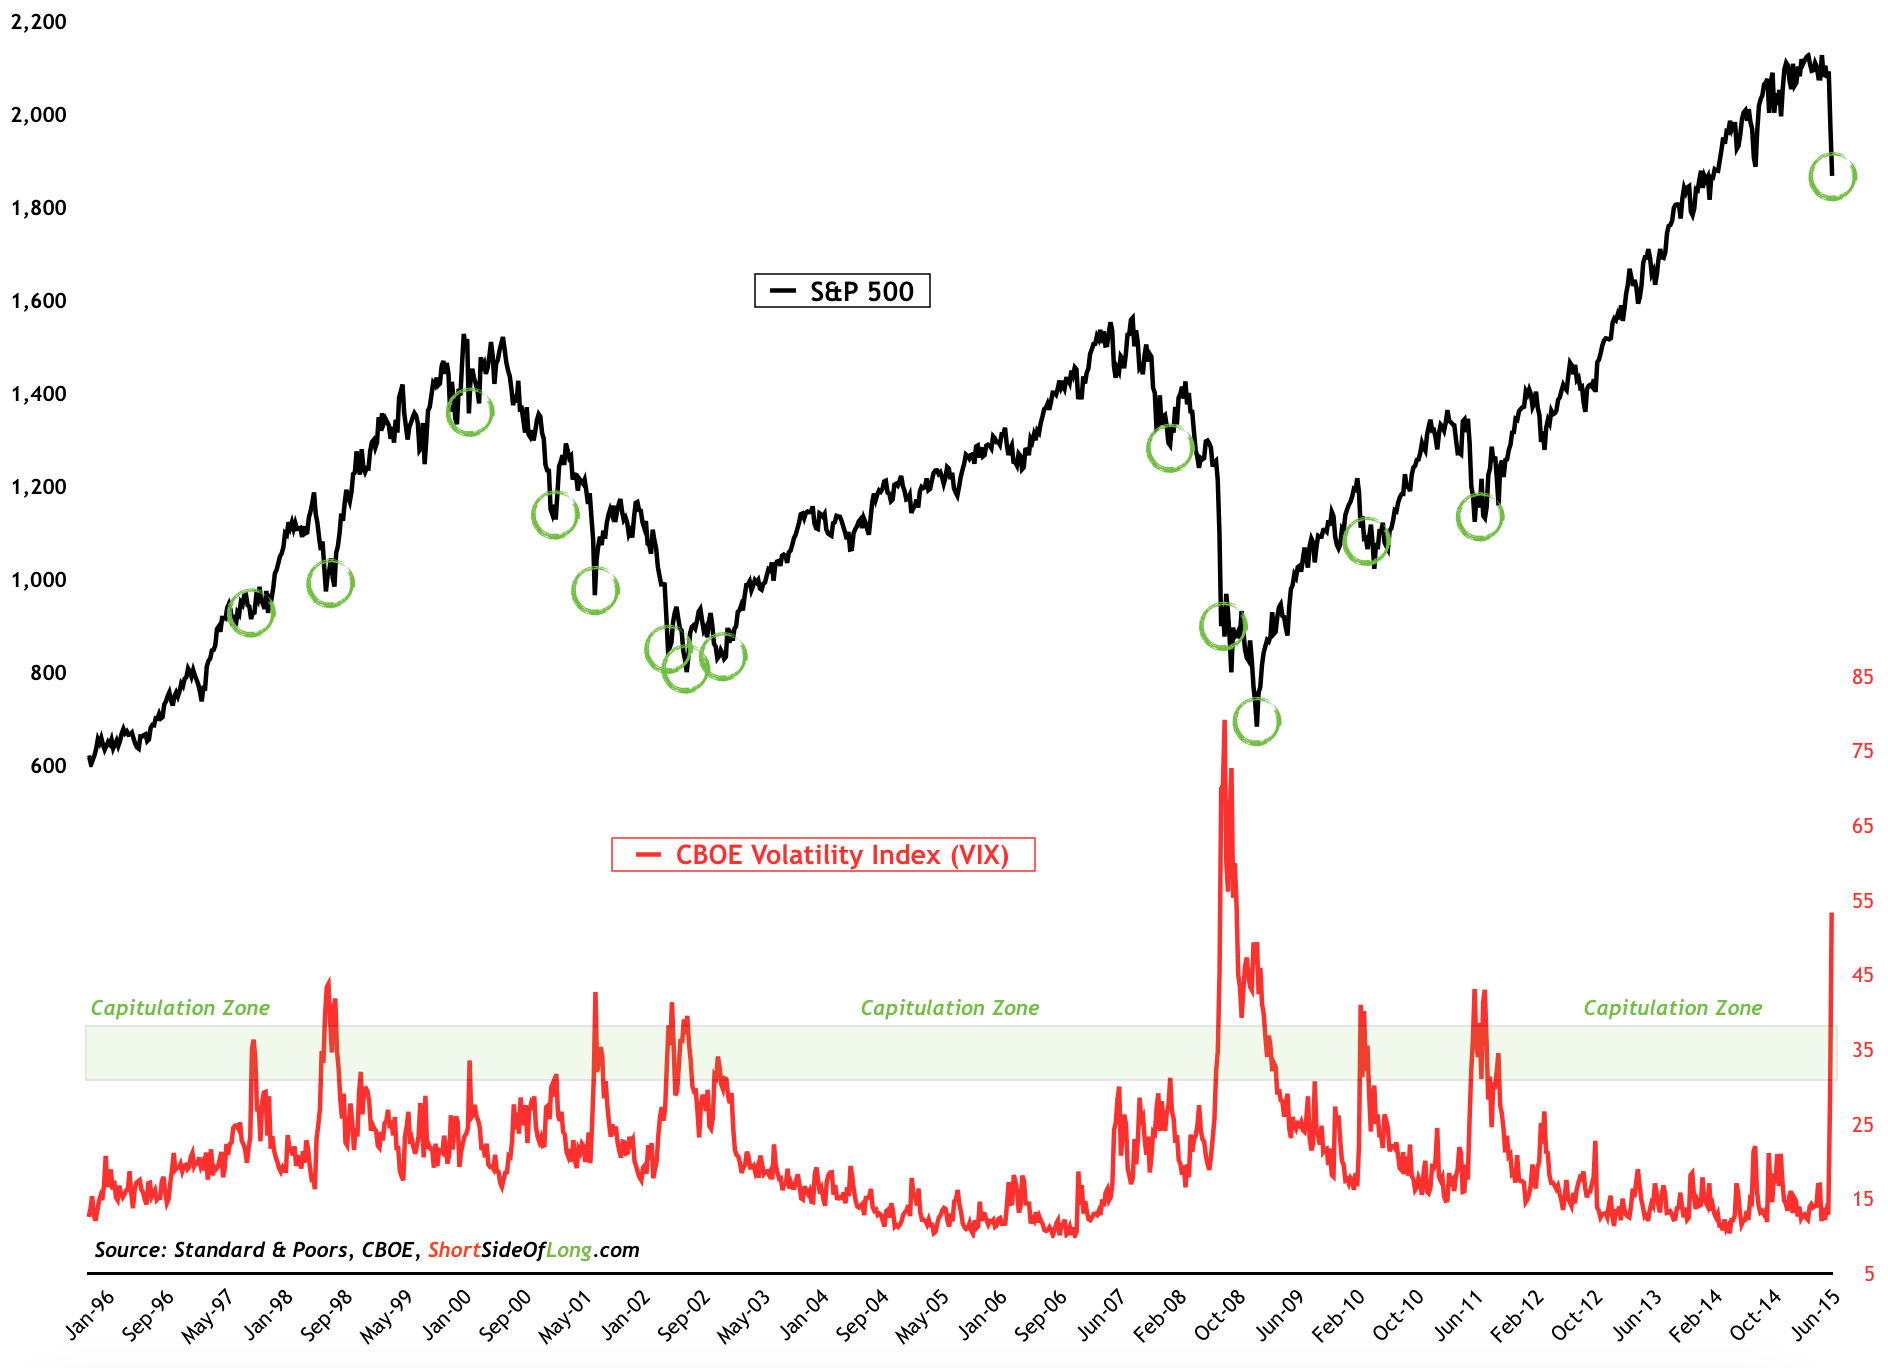 SPX vs NYSE 52 Week Hi/Lo 2006-2015